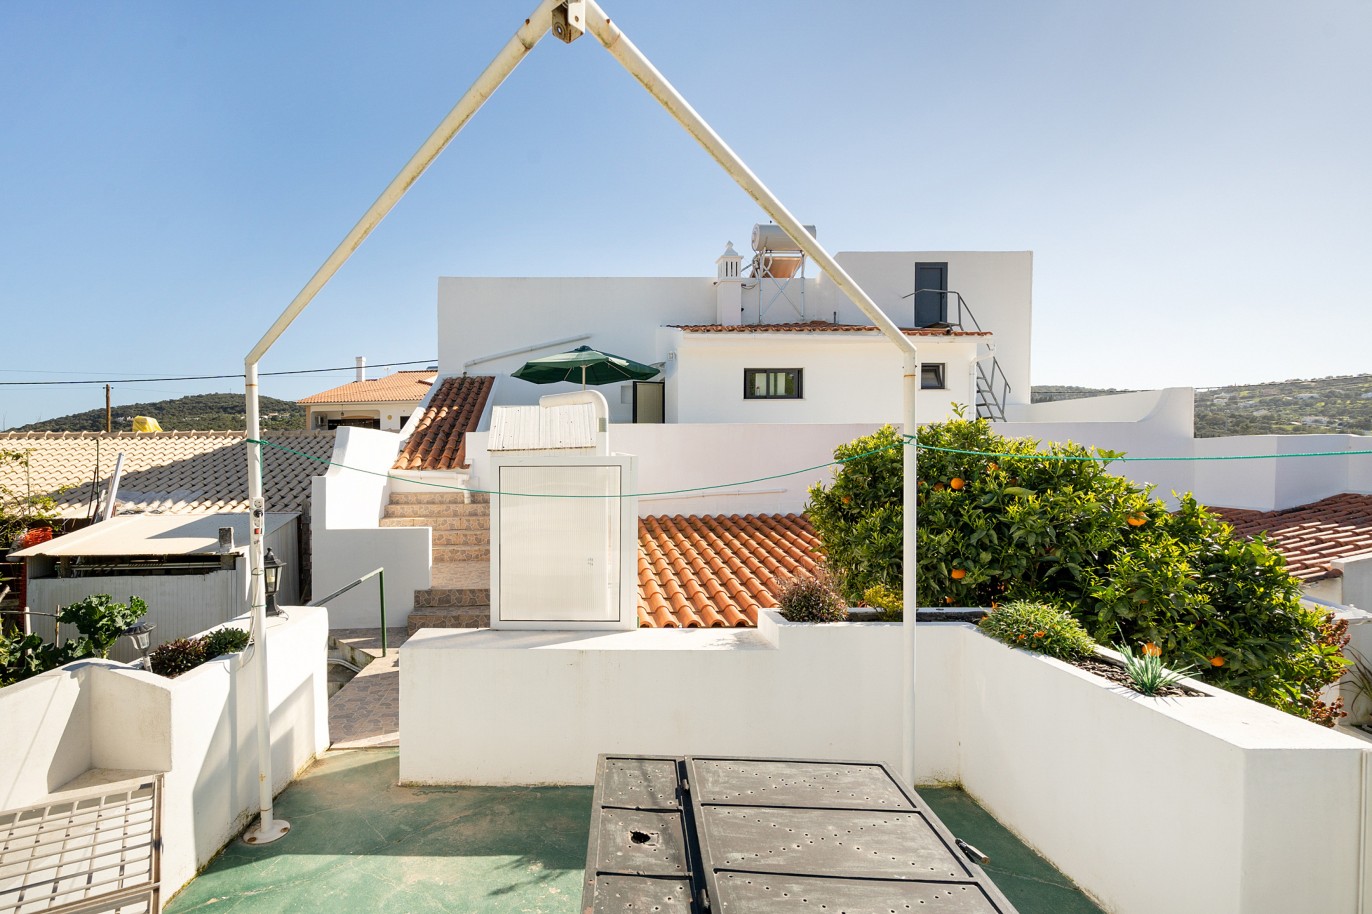 4 Dormitorios Villa Reformada, en venta en São Brás de Alportel, Algarve_219474